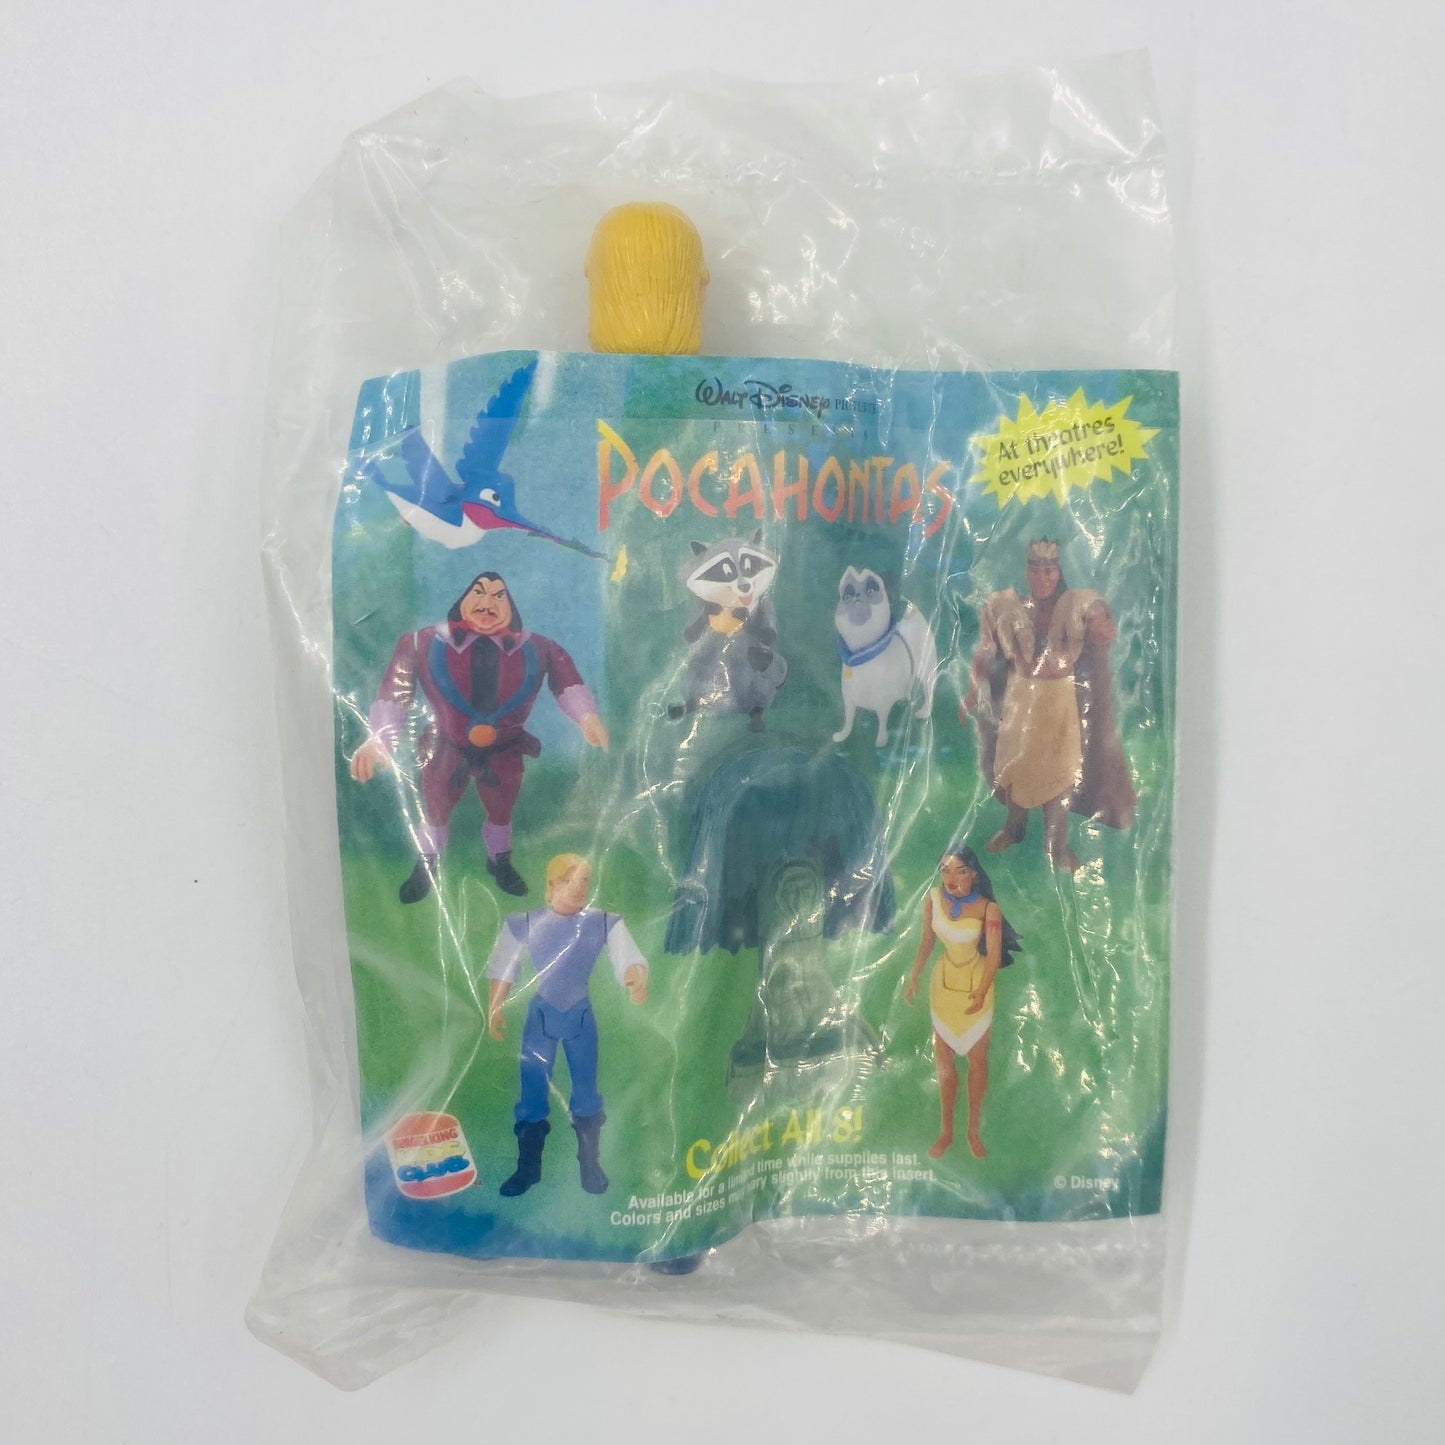 Pocahontas John Smith Burger King Kids' Meal toy (1995) bagged